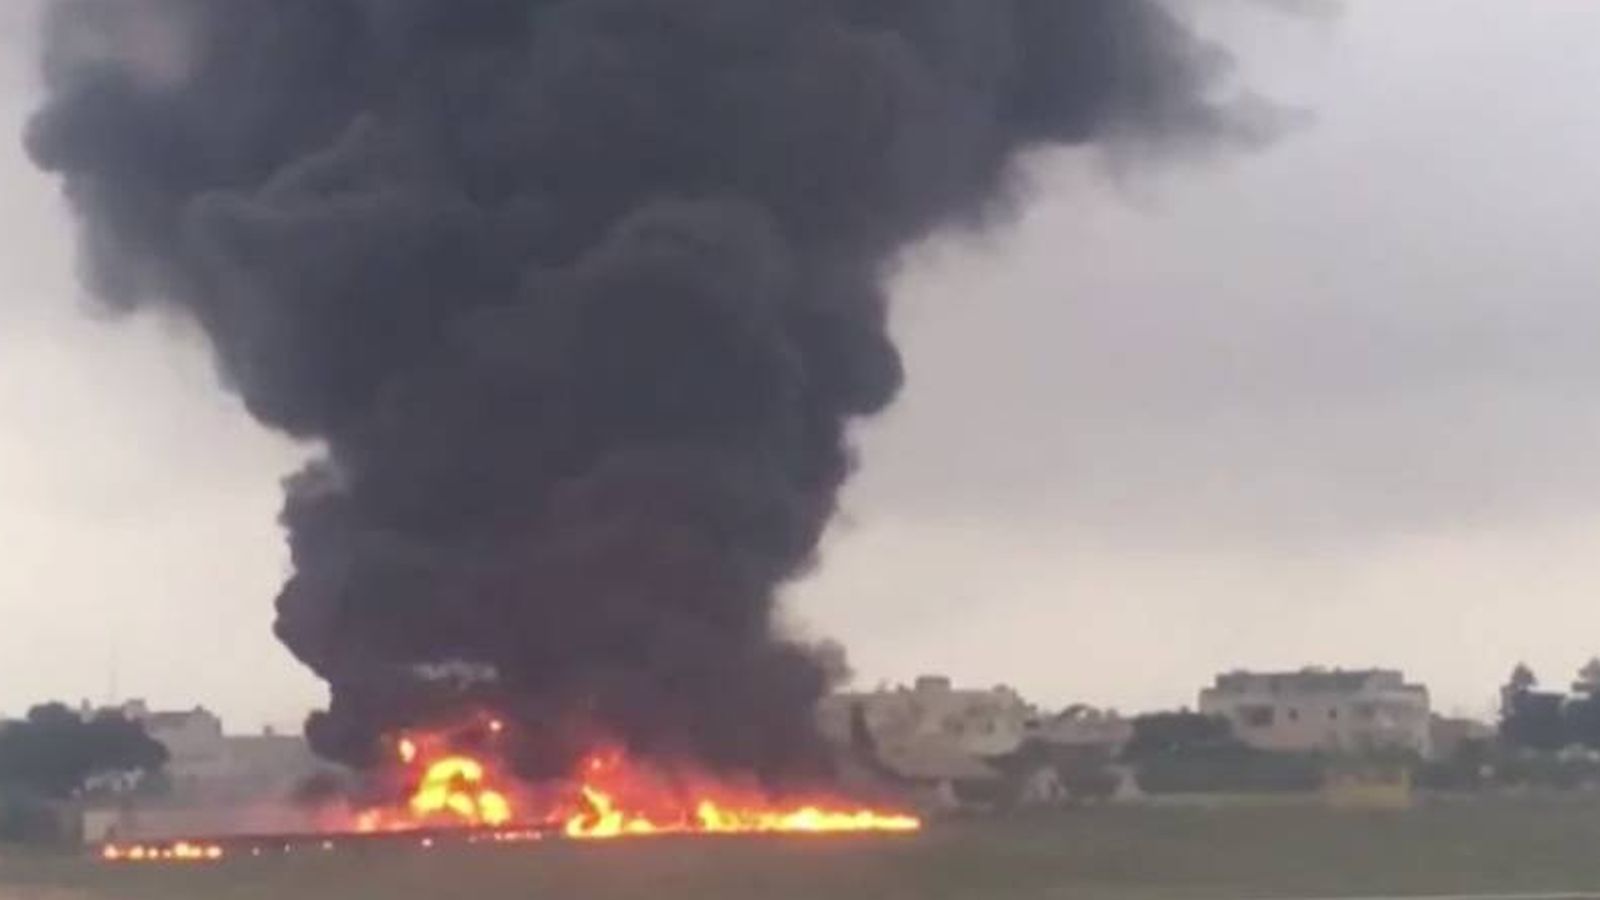 Foto: Imagen del accidente de avión ocurrido en Malta